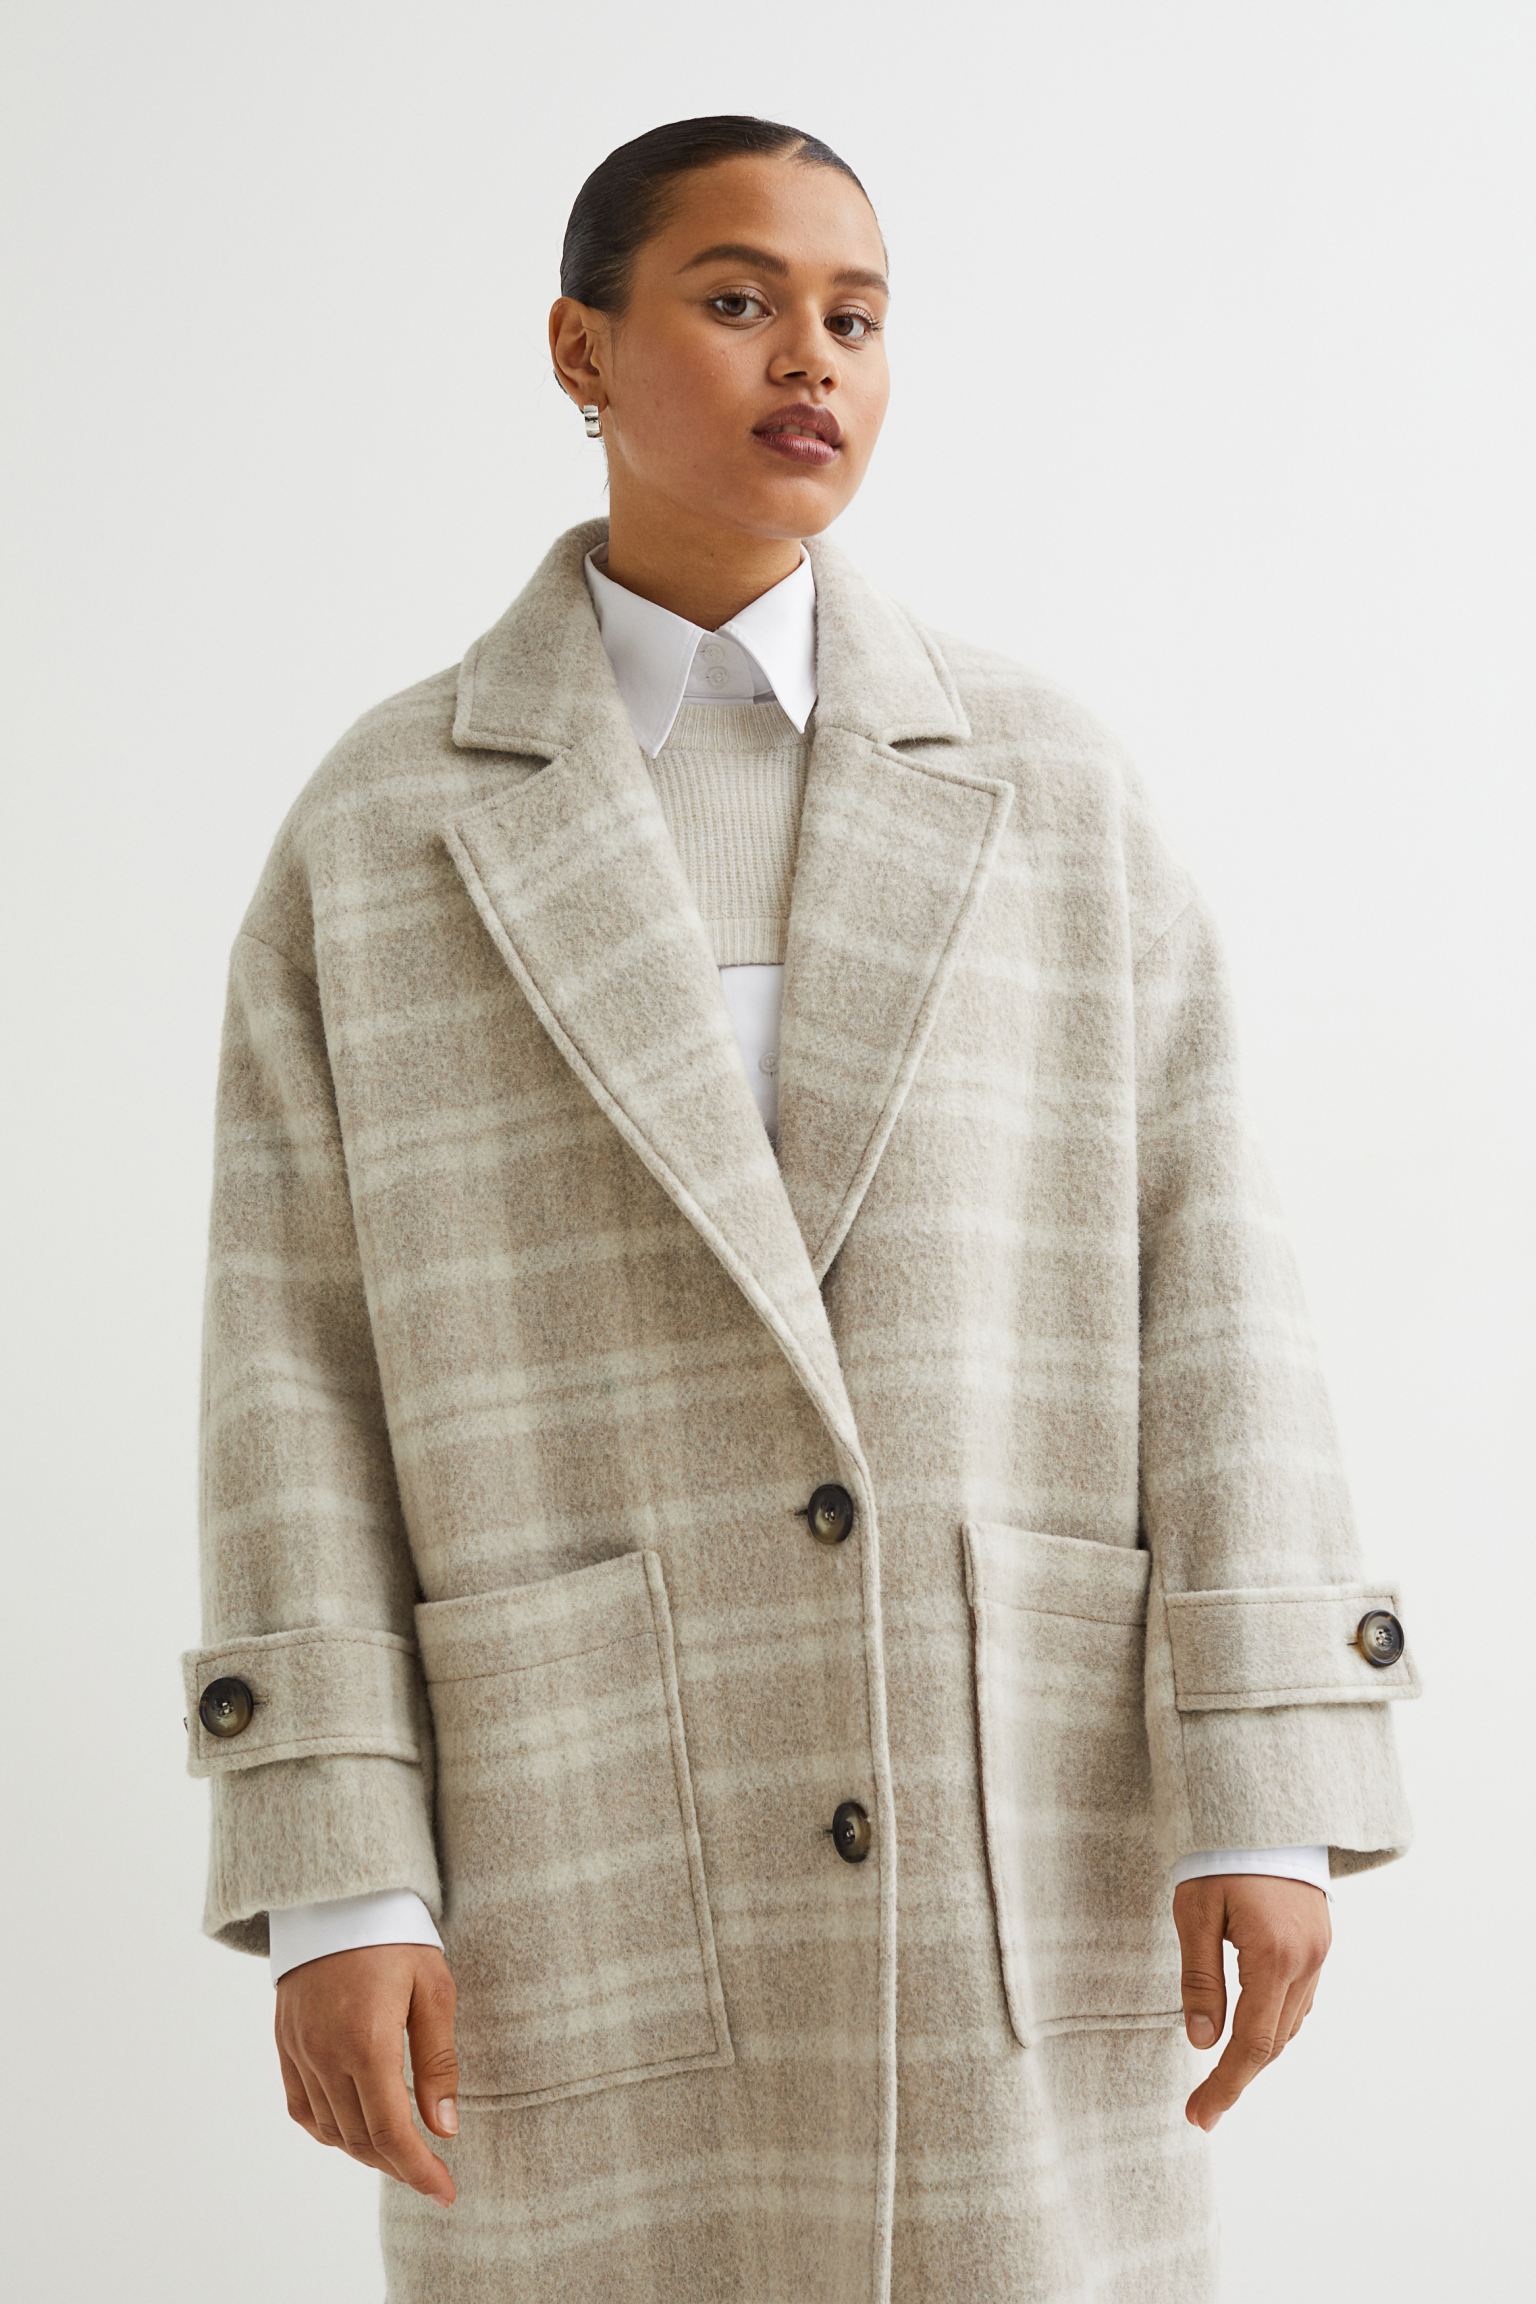 Abrigo en mezcla de lana con estampado de cuadros en tonos beige de H&amp;M (precio: 99,99€ / 179€)